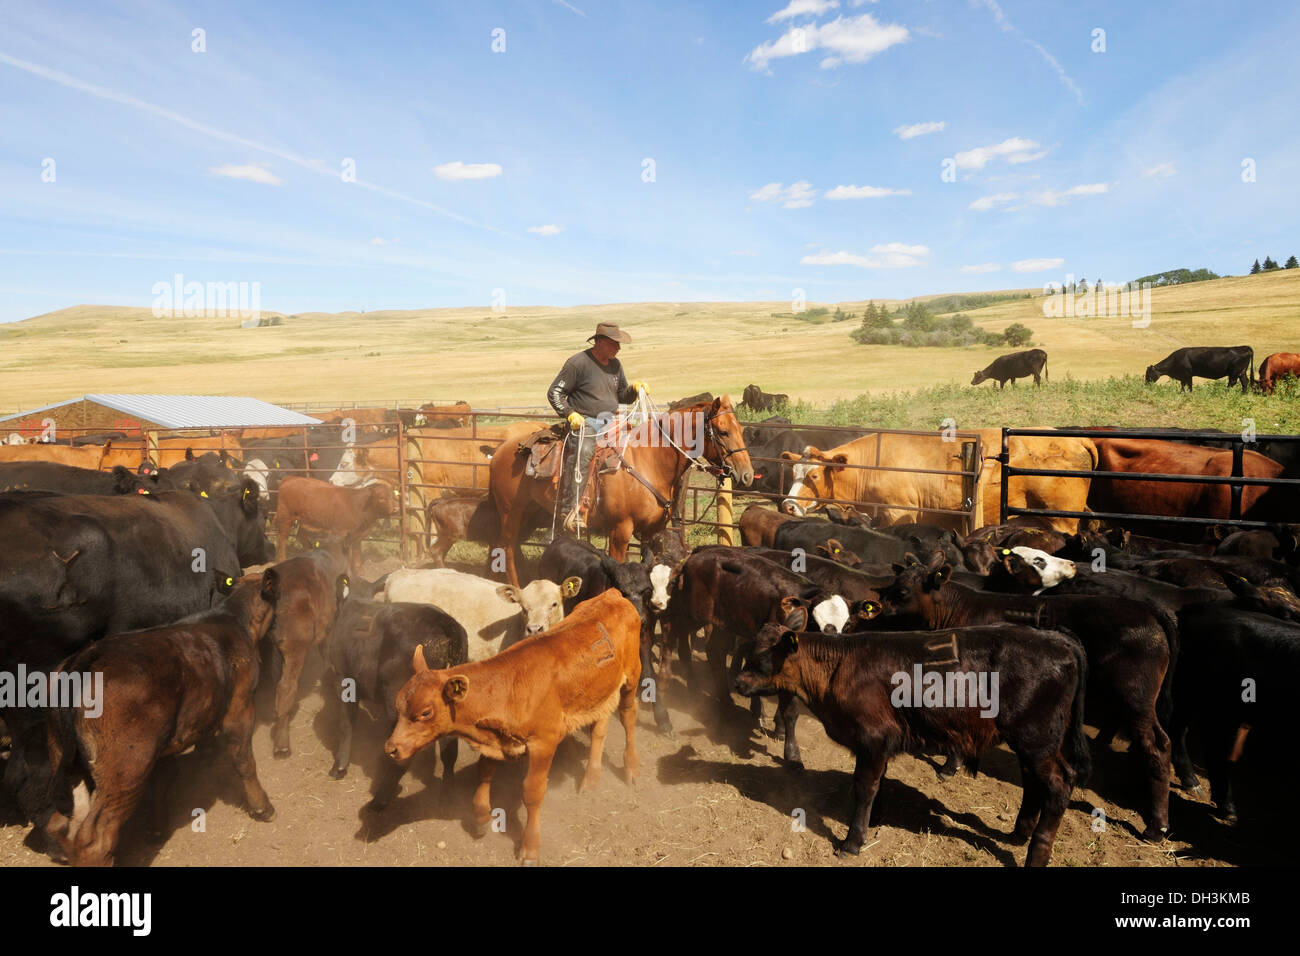 Cowboy auf einem Pferd, Vieh auf der Koppel mit einem Lasso einfangen, so dass sie können gebrandmarkt, Cypress Hills, Saskatchewan Provinz Stockfoto